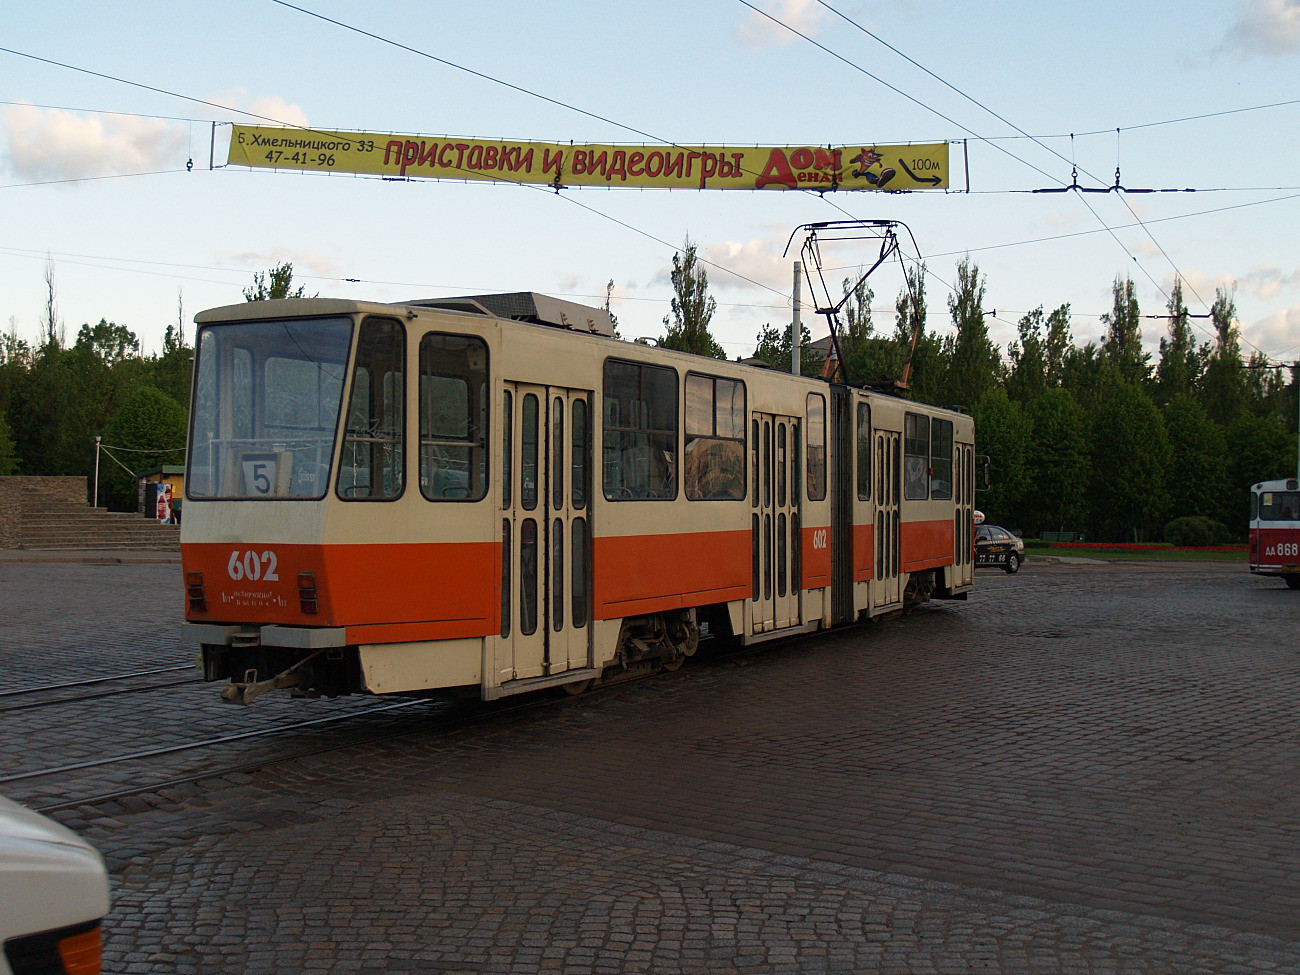 Tatra KT4D #602